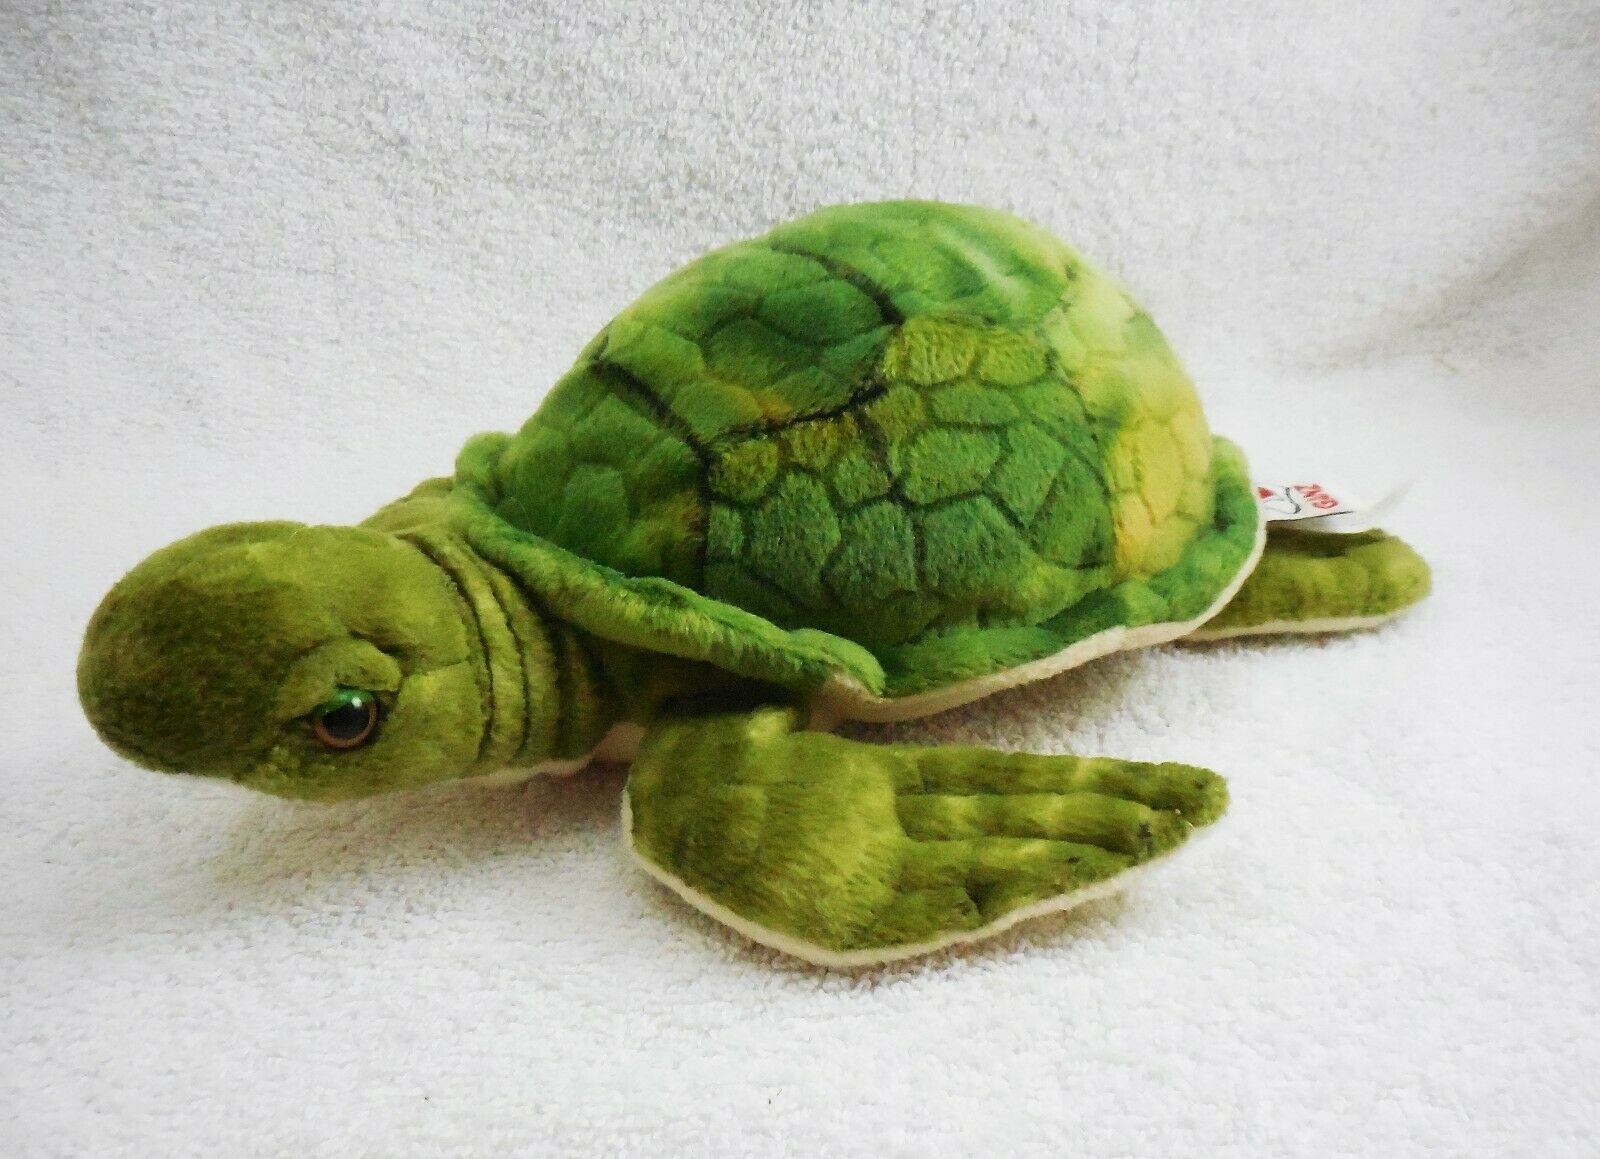 New webkinz turtle